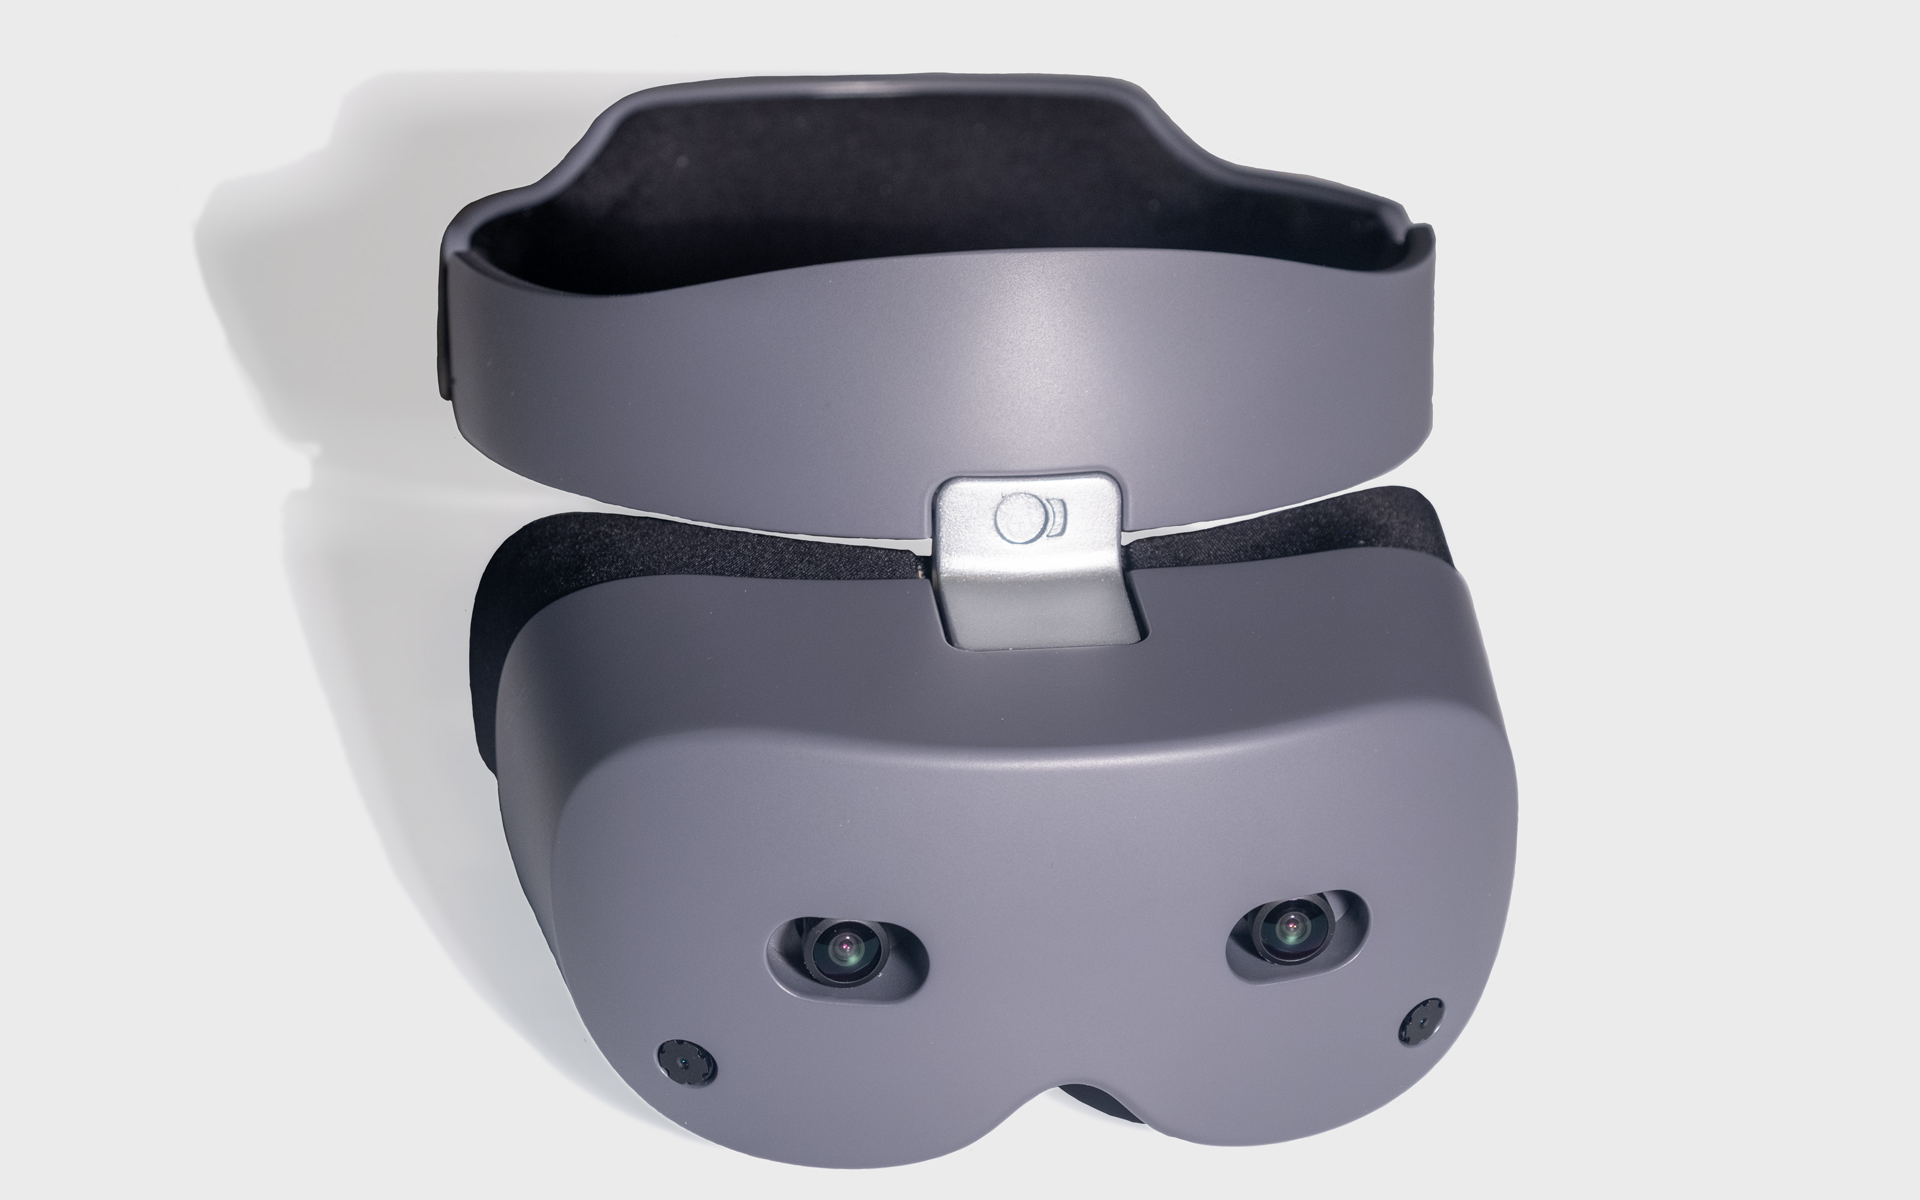 virtual reality headset standalone